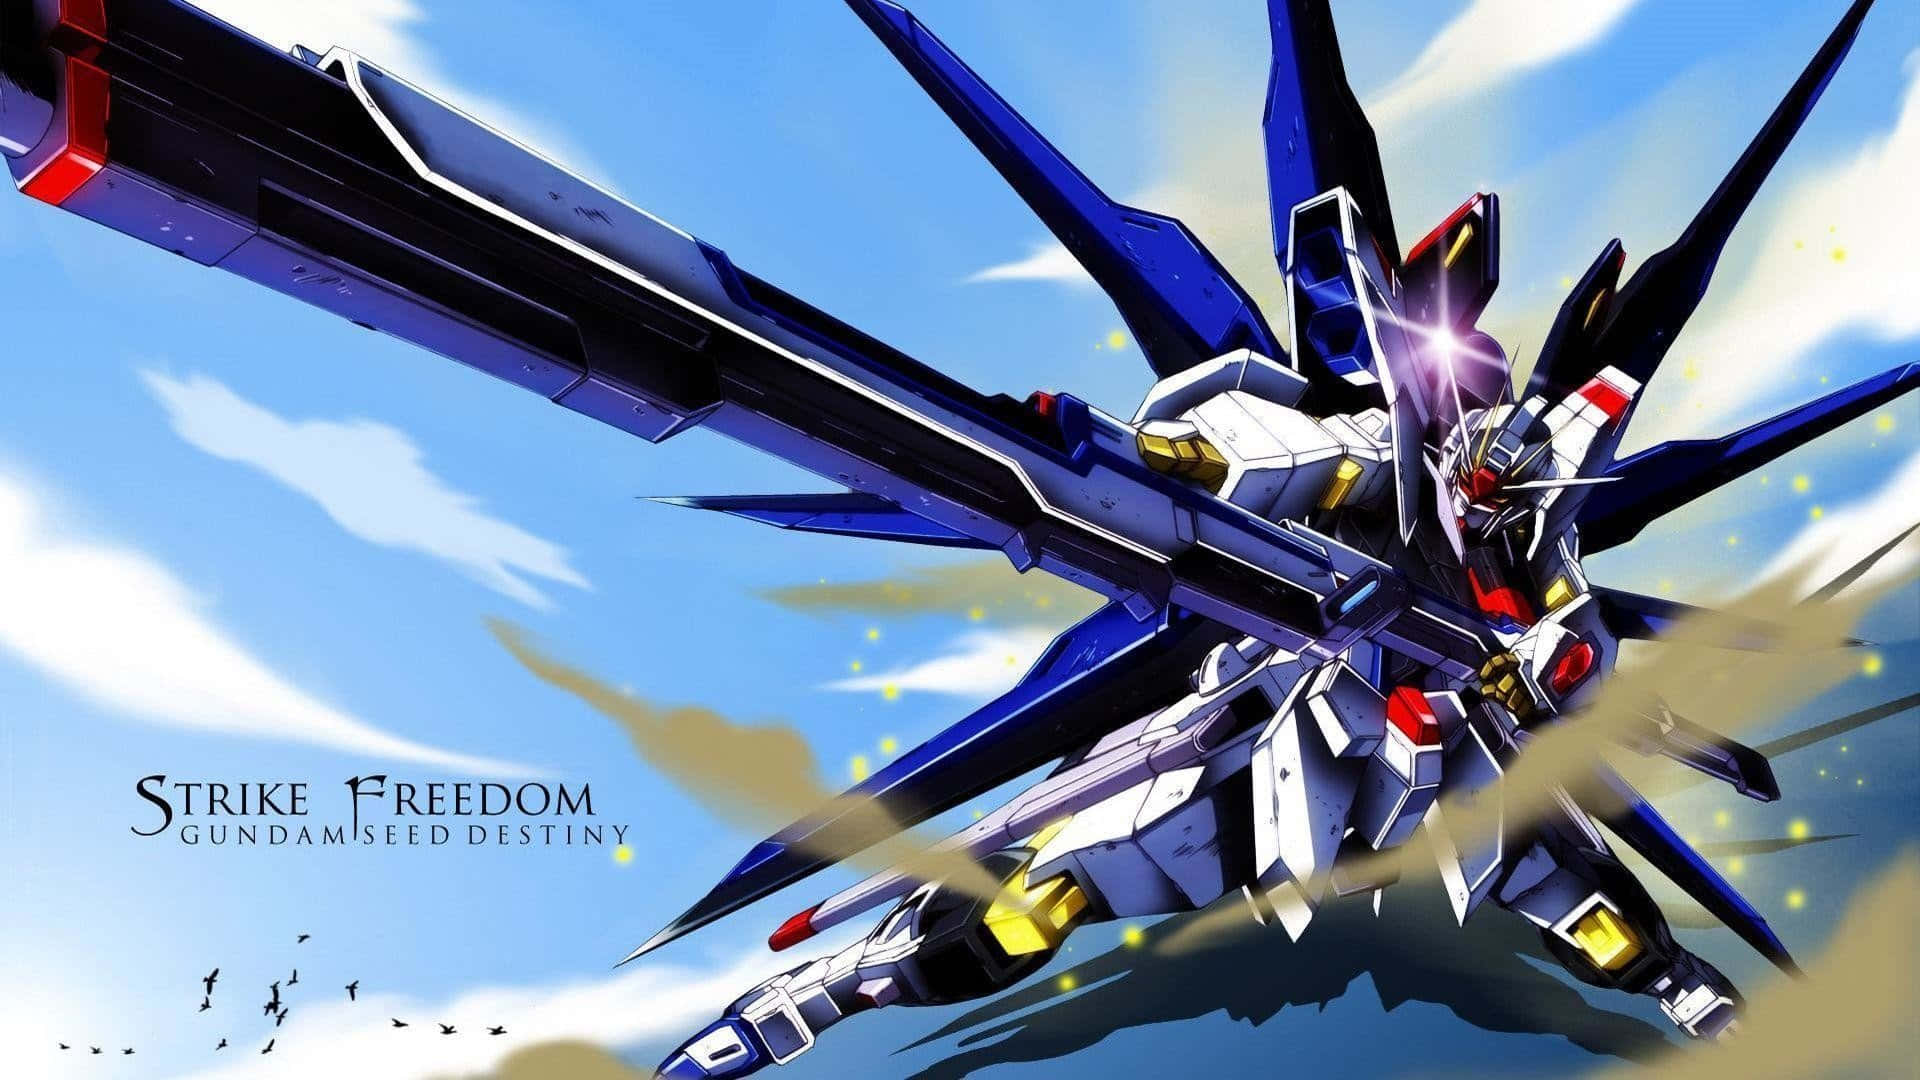 Dieikonische Gundamfigur In Der Popkultur Referenziert.